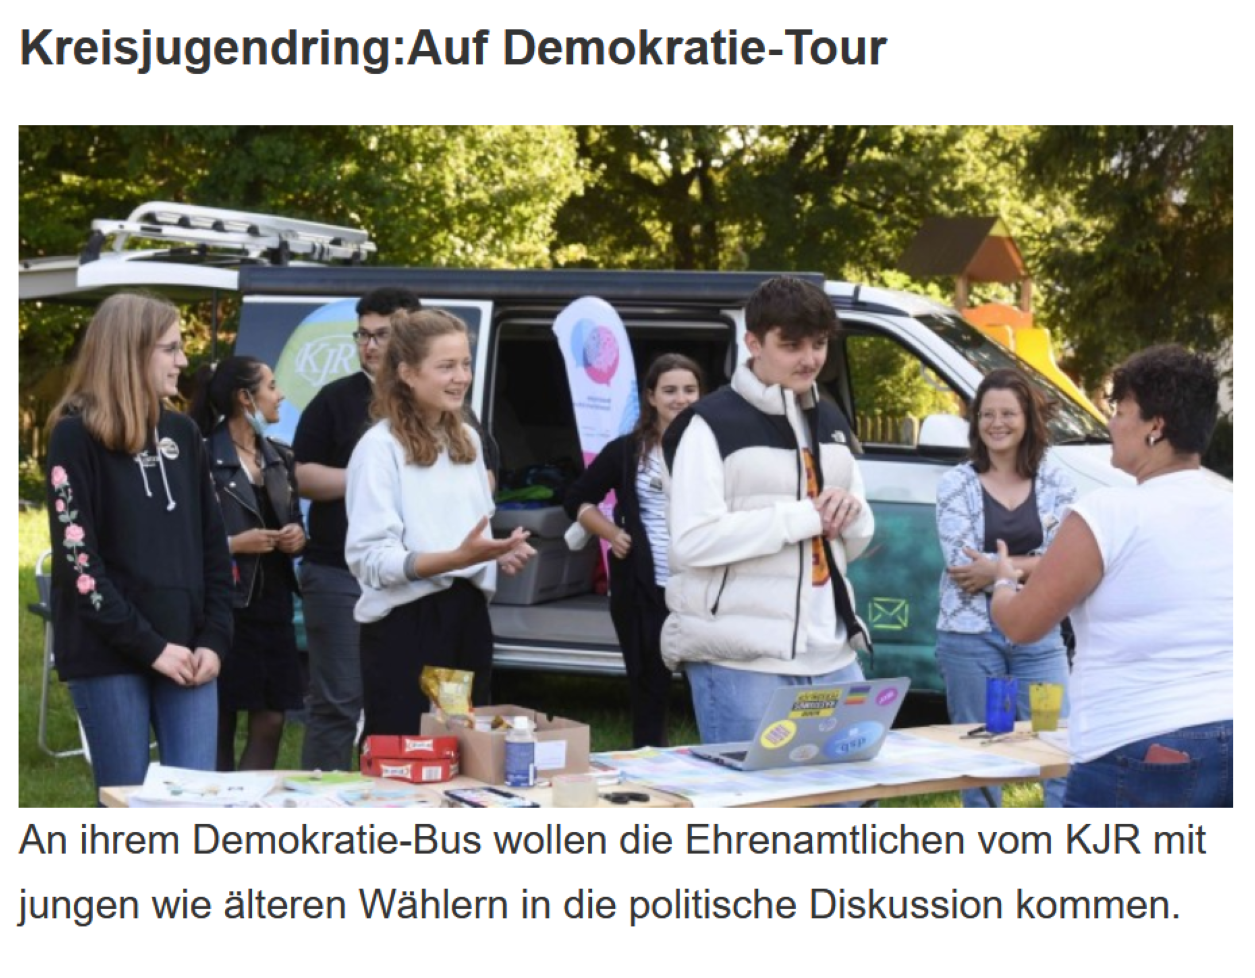 KJR_Auf_Demokratie_Tour